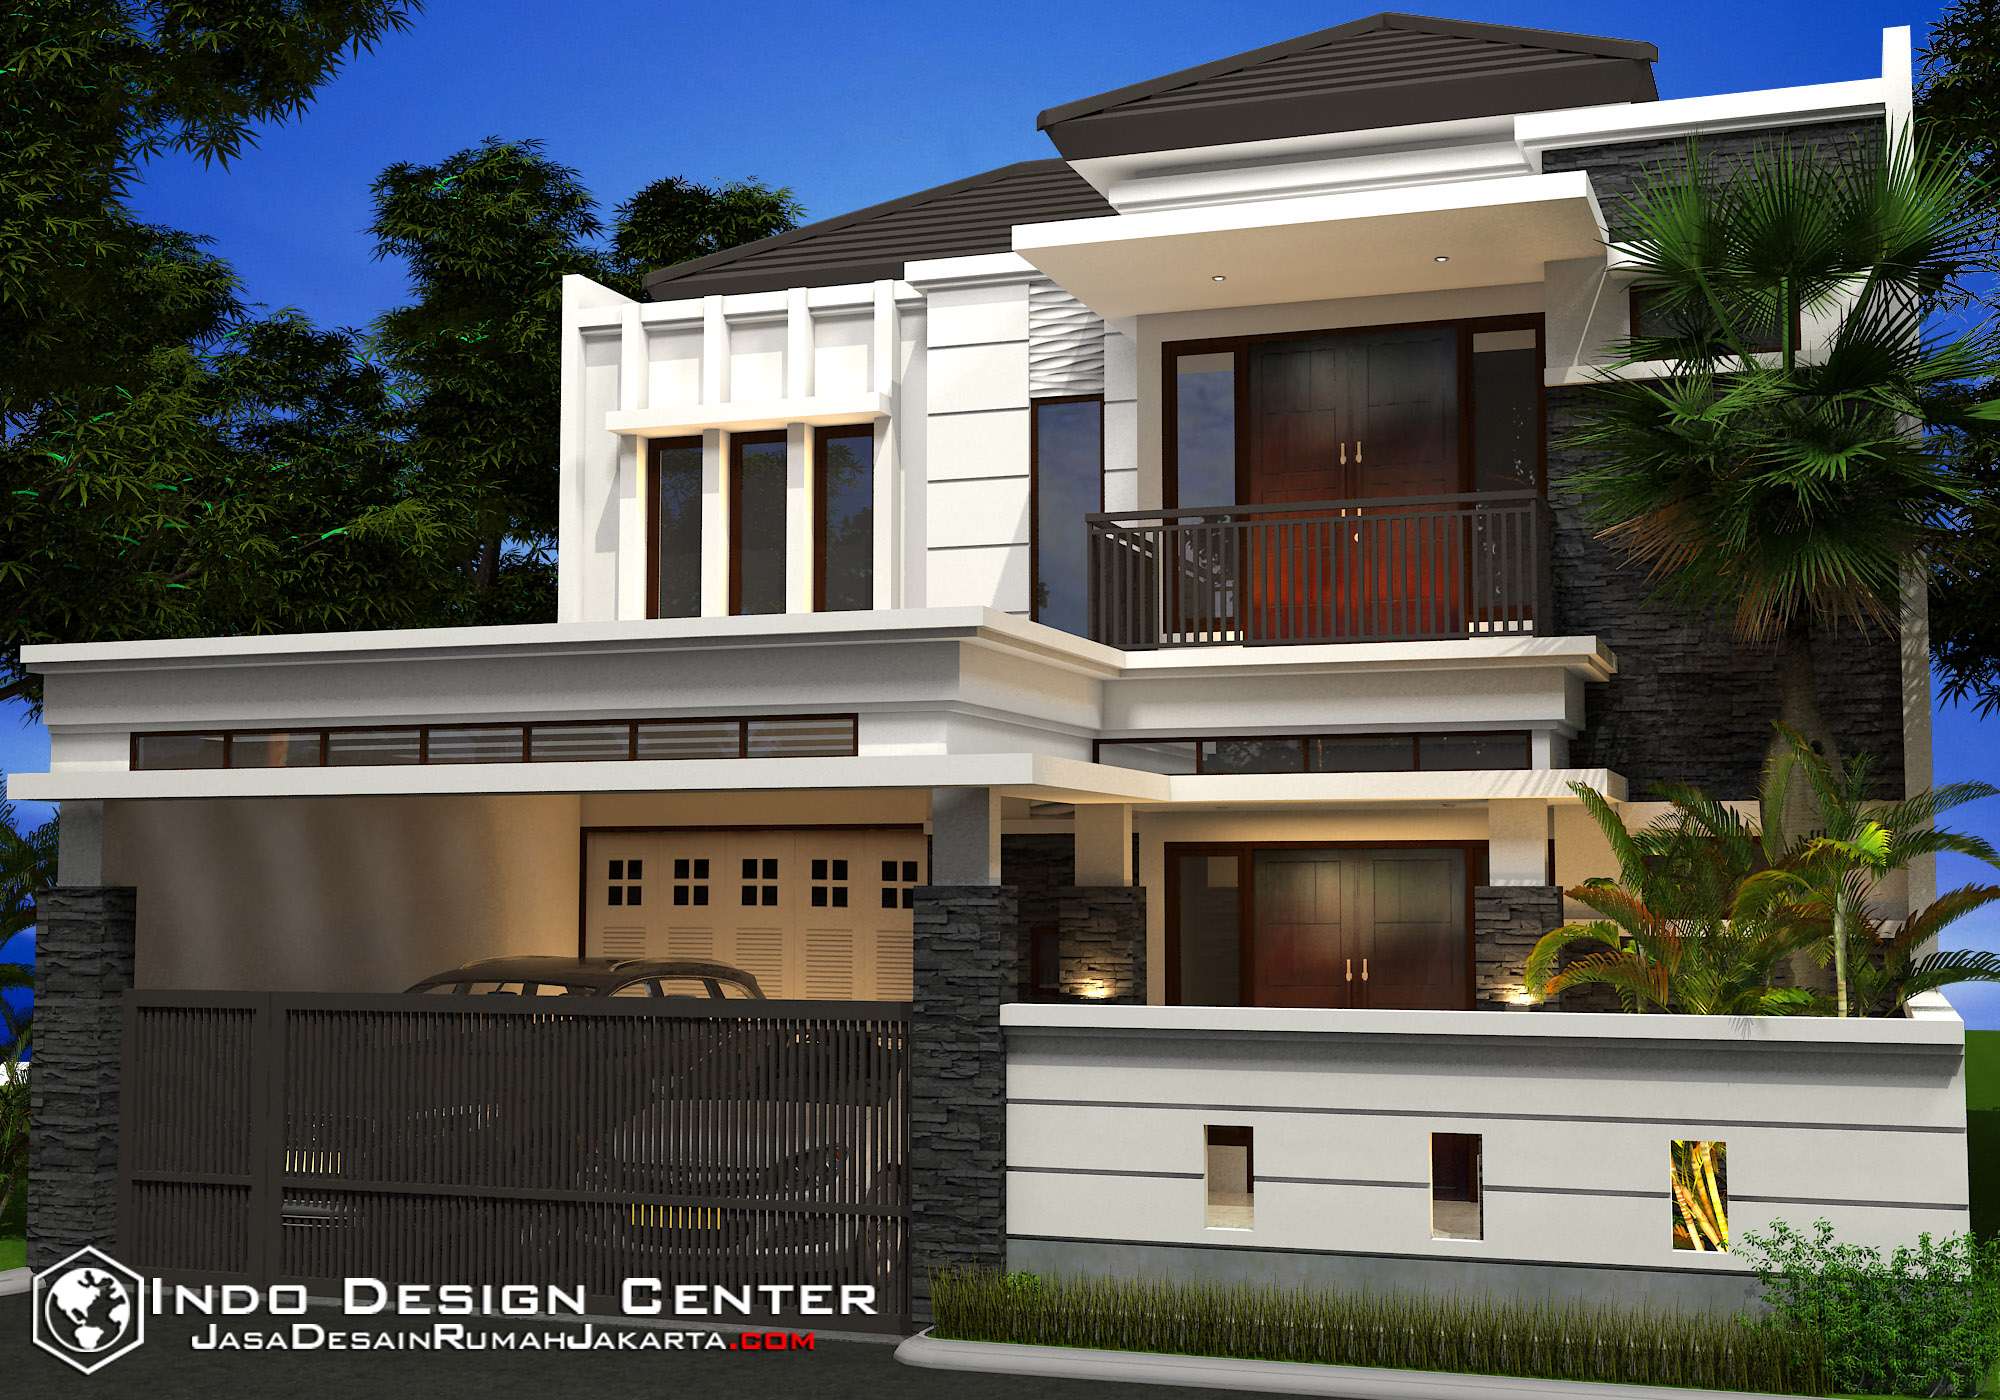 Jasa Desain Interior Rumah Bekasi - Contoh Z